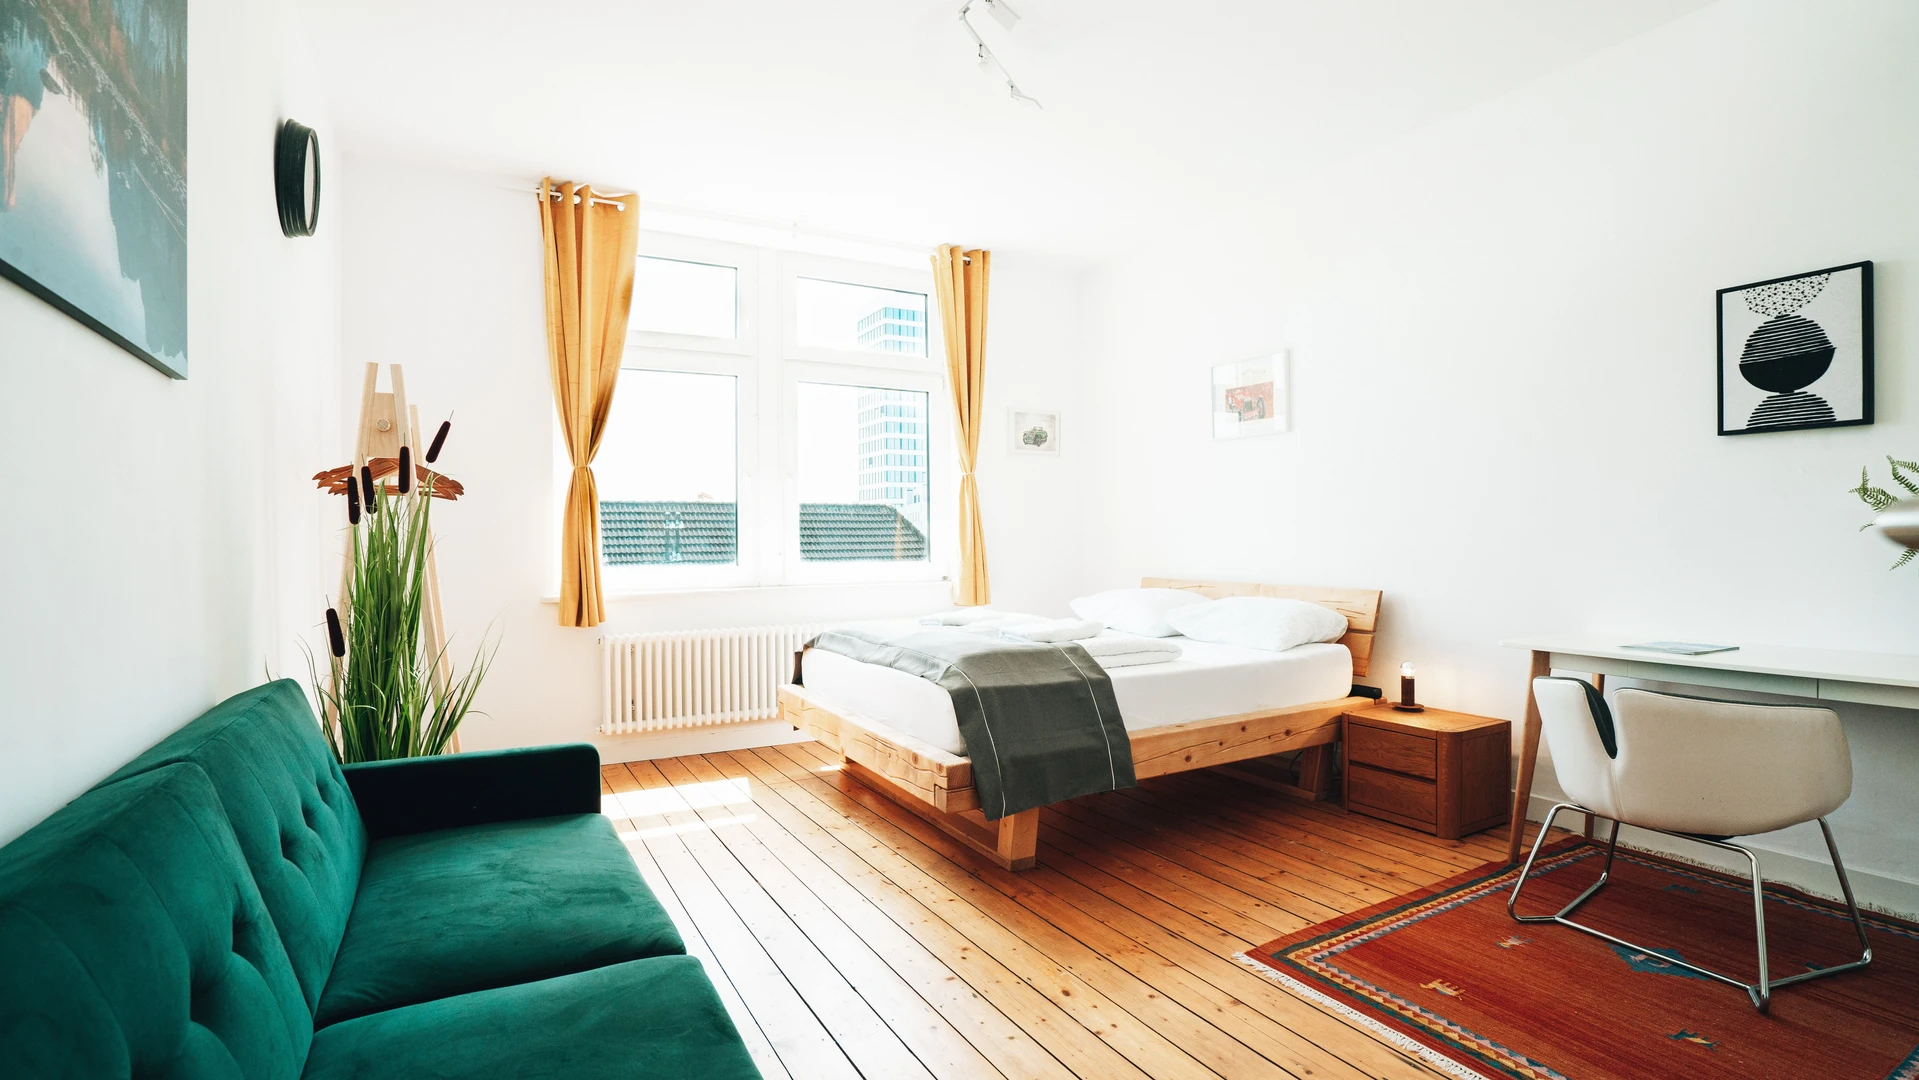 Alquiler de habitación en piso compartido en Bielefeld